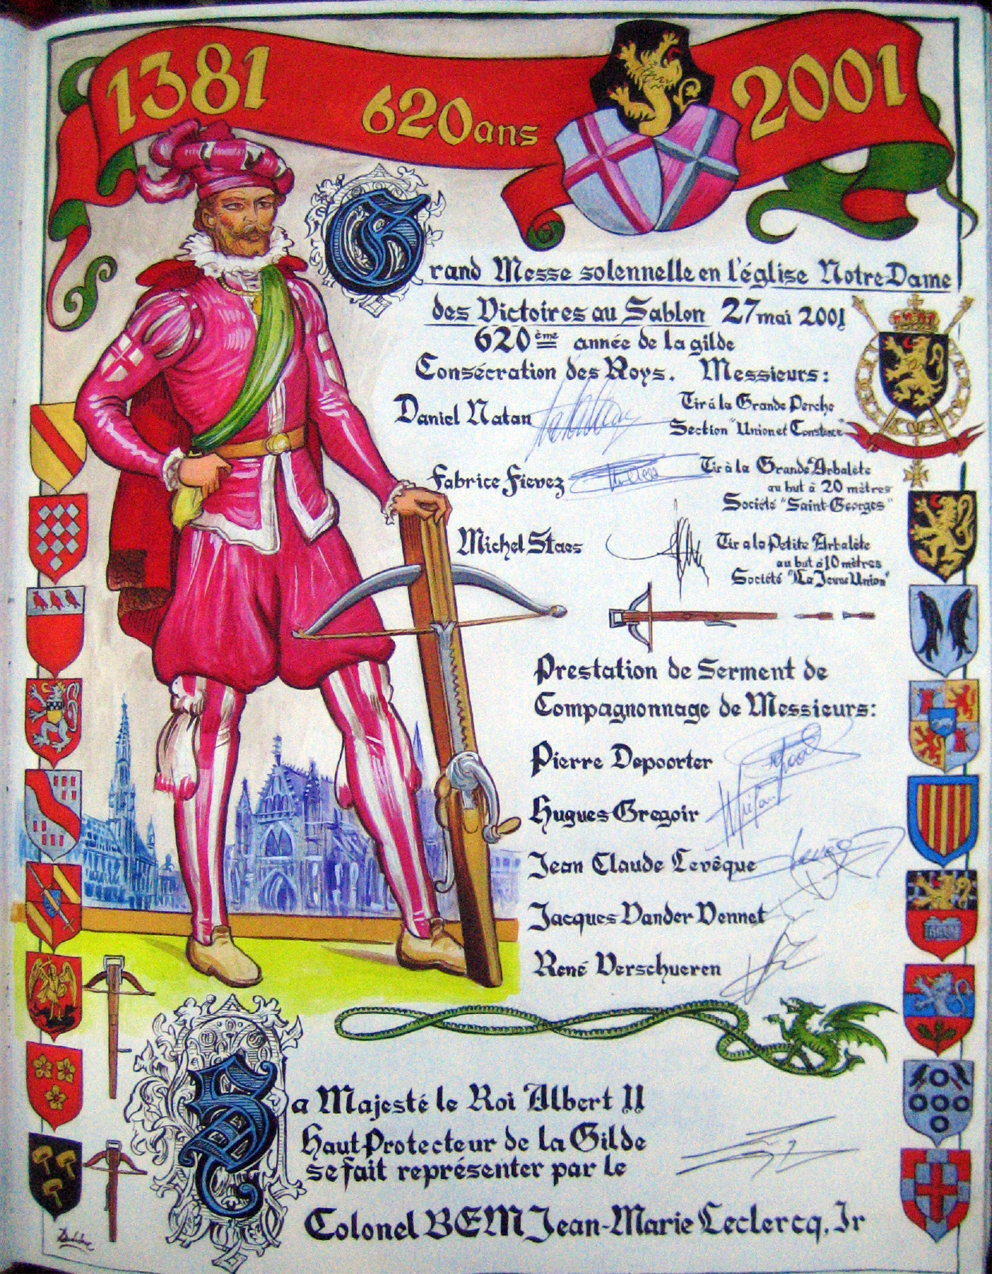 Livre d'Or du Grand Serment Royal et de Saint-Georges des Arbalétriers de Bruxelles